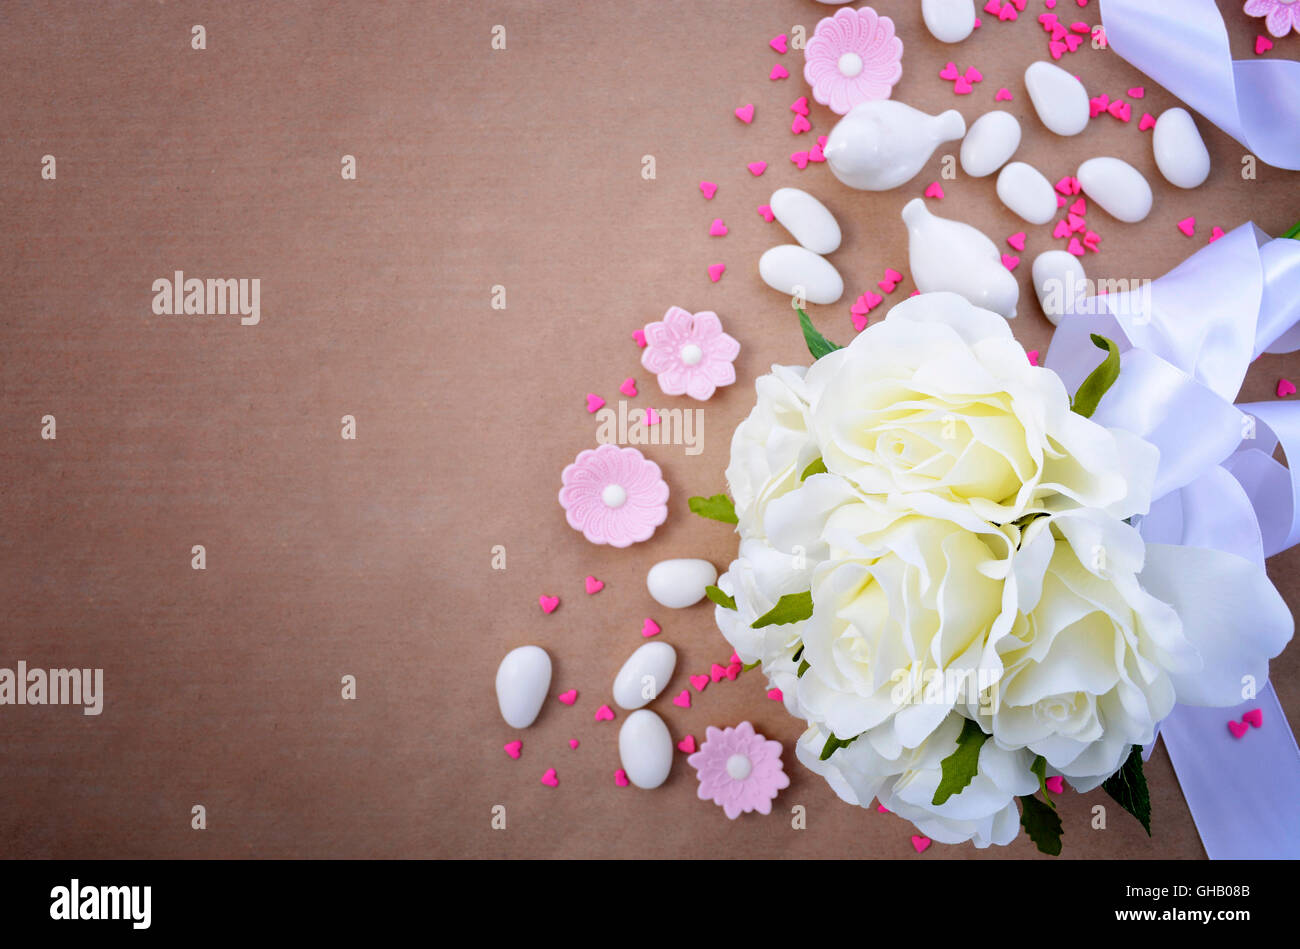 Sfondo di matrimonio con bordi decorati e copia dello spazio sul marrone naturale sfondo della carta, con applicato uno stile rétro filtri. Foto Stock